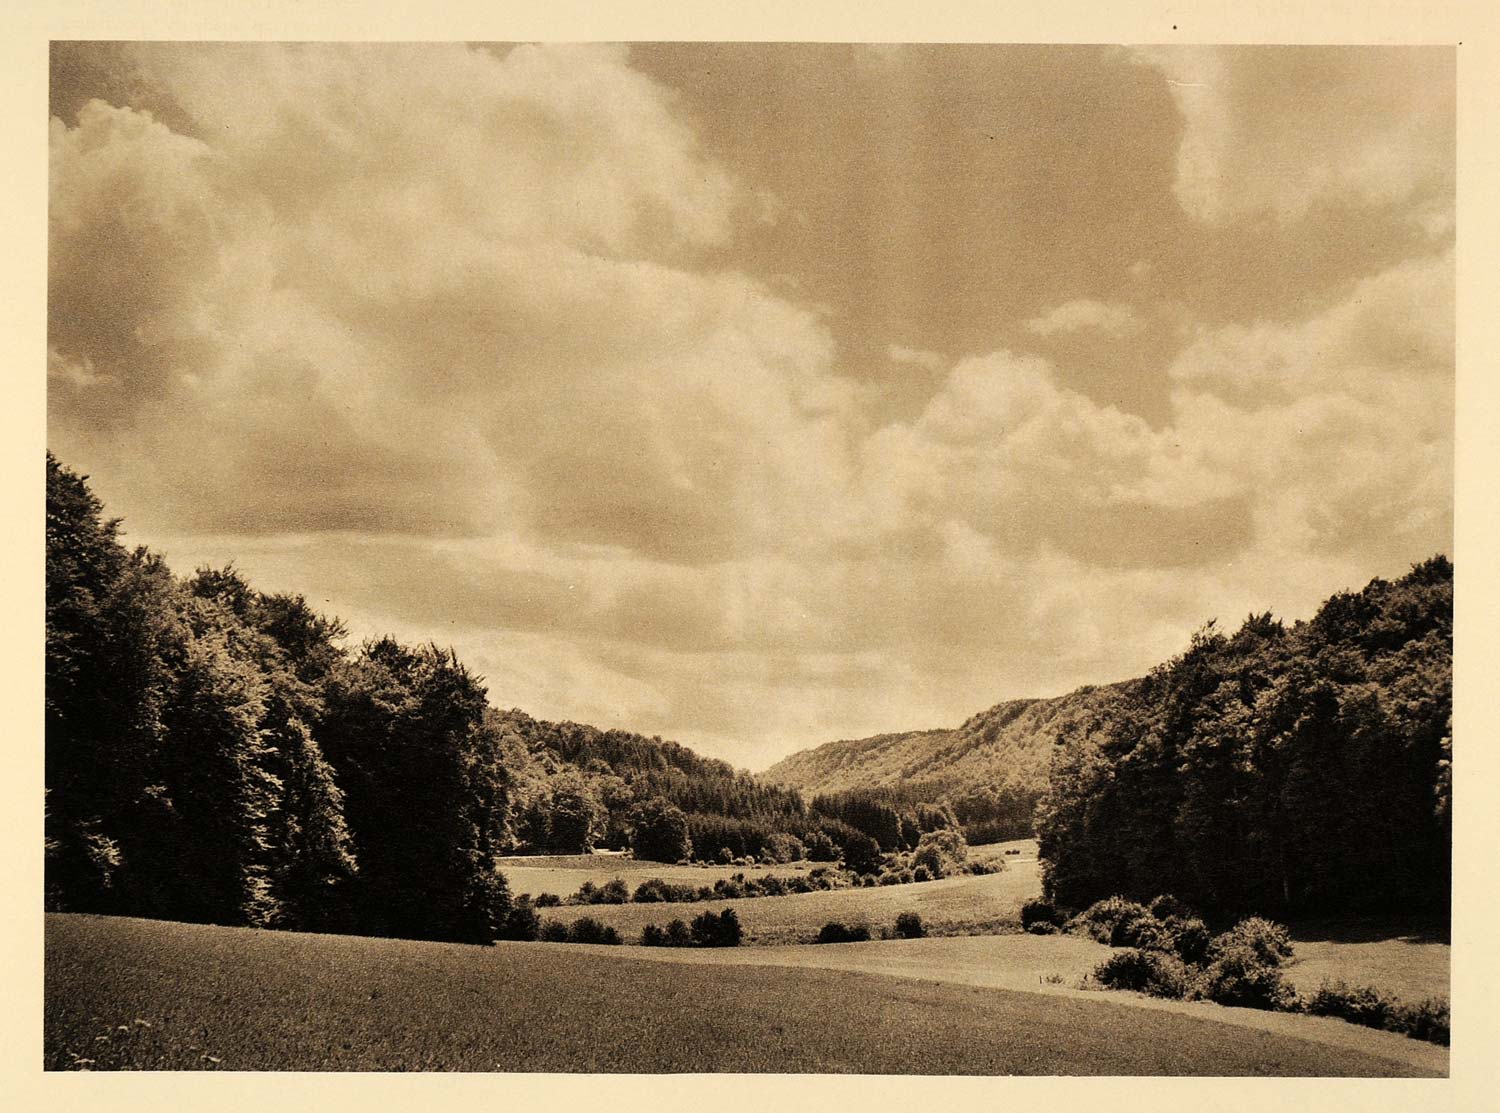 1932 Rural Landscape Fischbach Luxembourg Hurlimann - ORIGINAL PHOTOGRAVURE LUX1